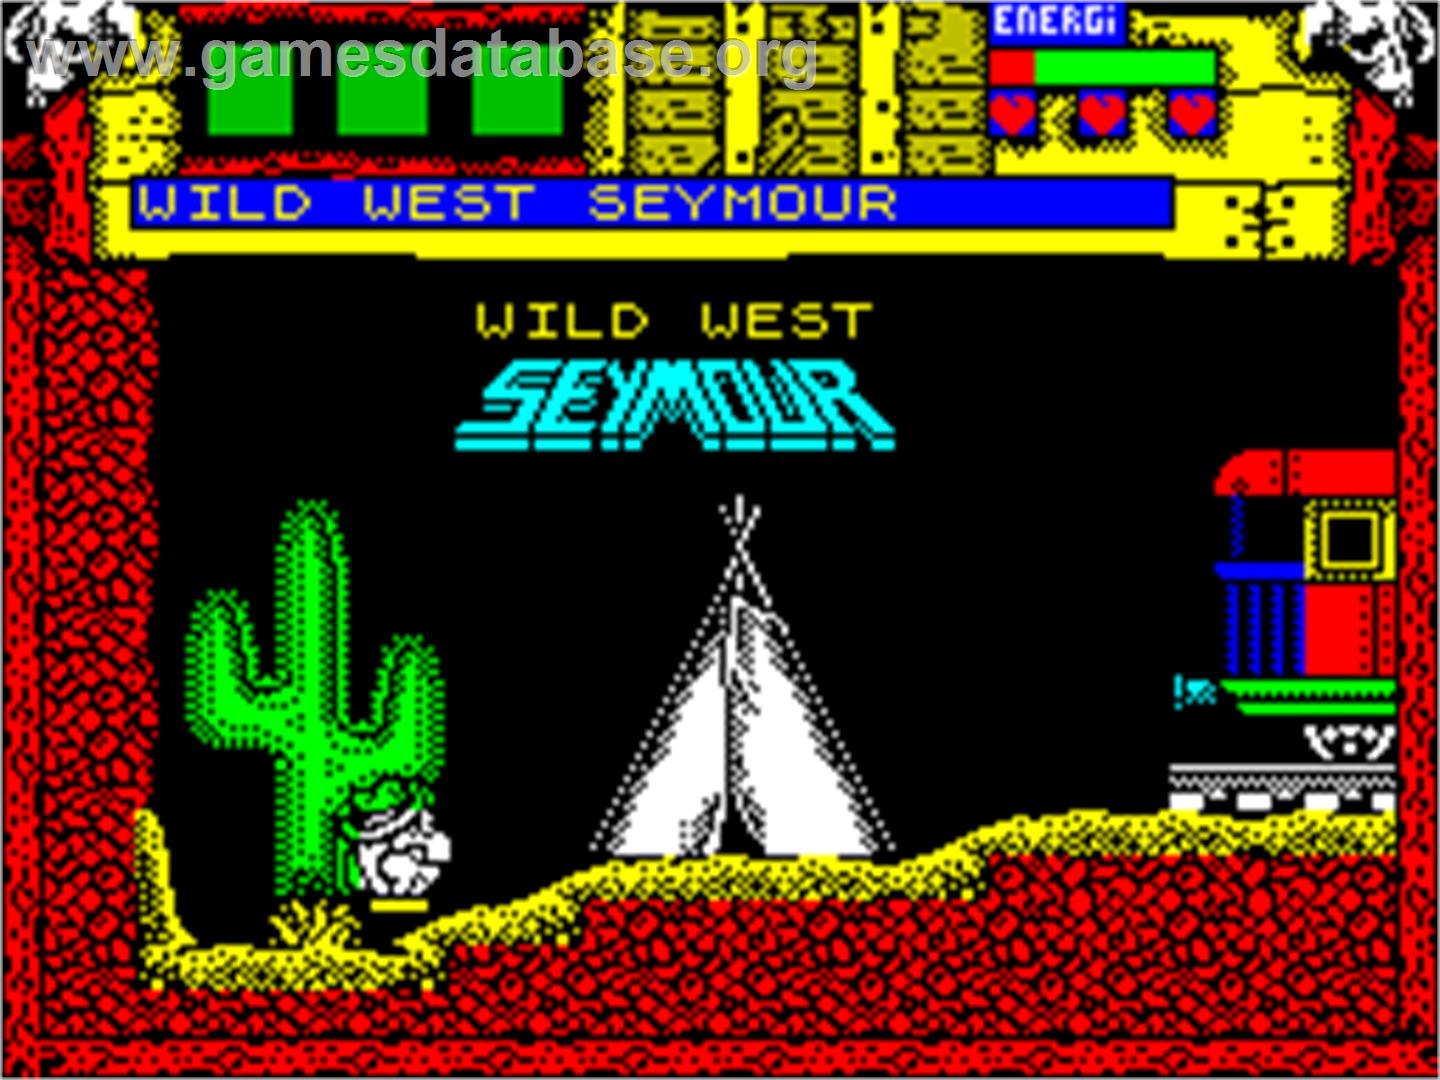 Wild West Seymour - Sinclair ZX Spectrum - Artwork - In Game